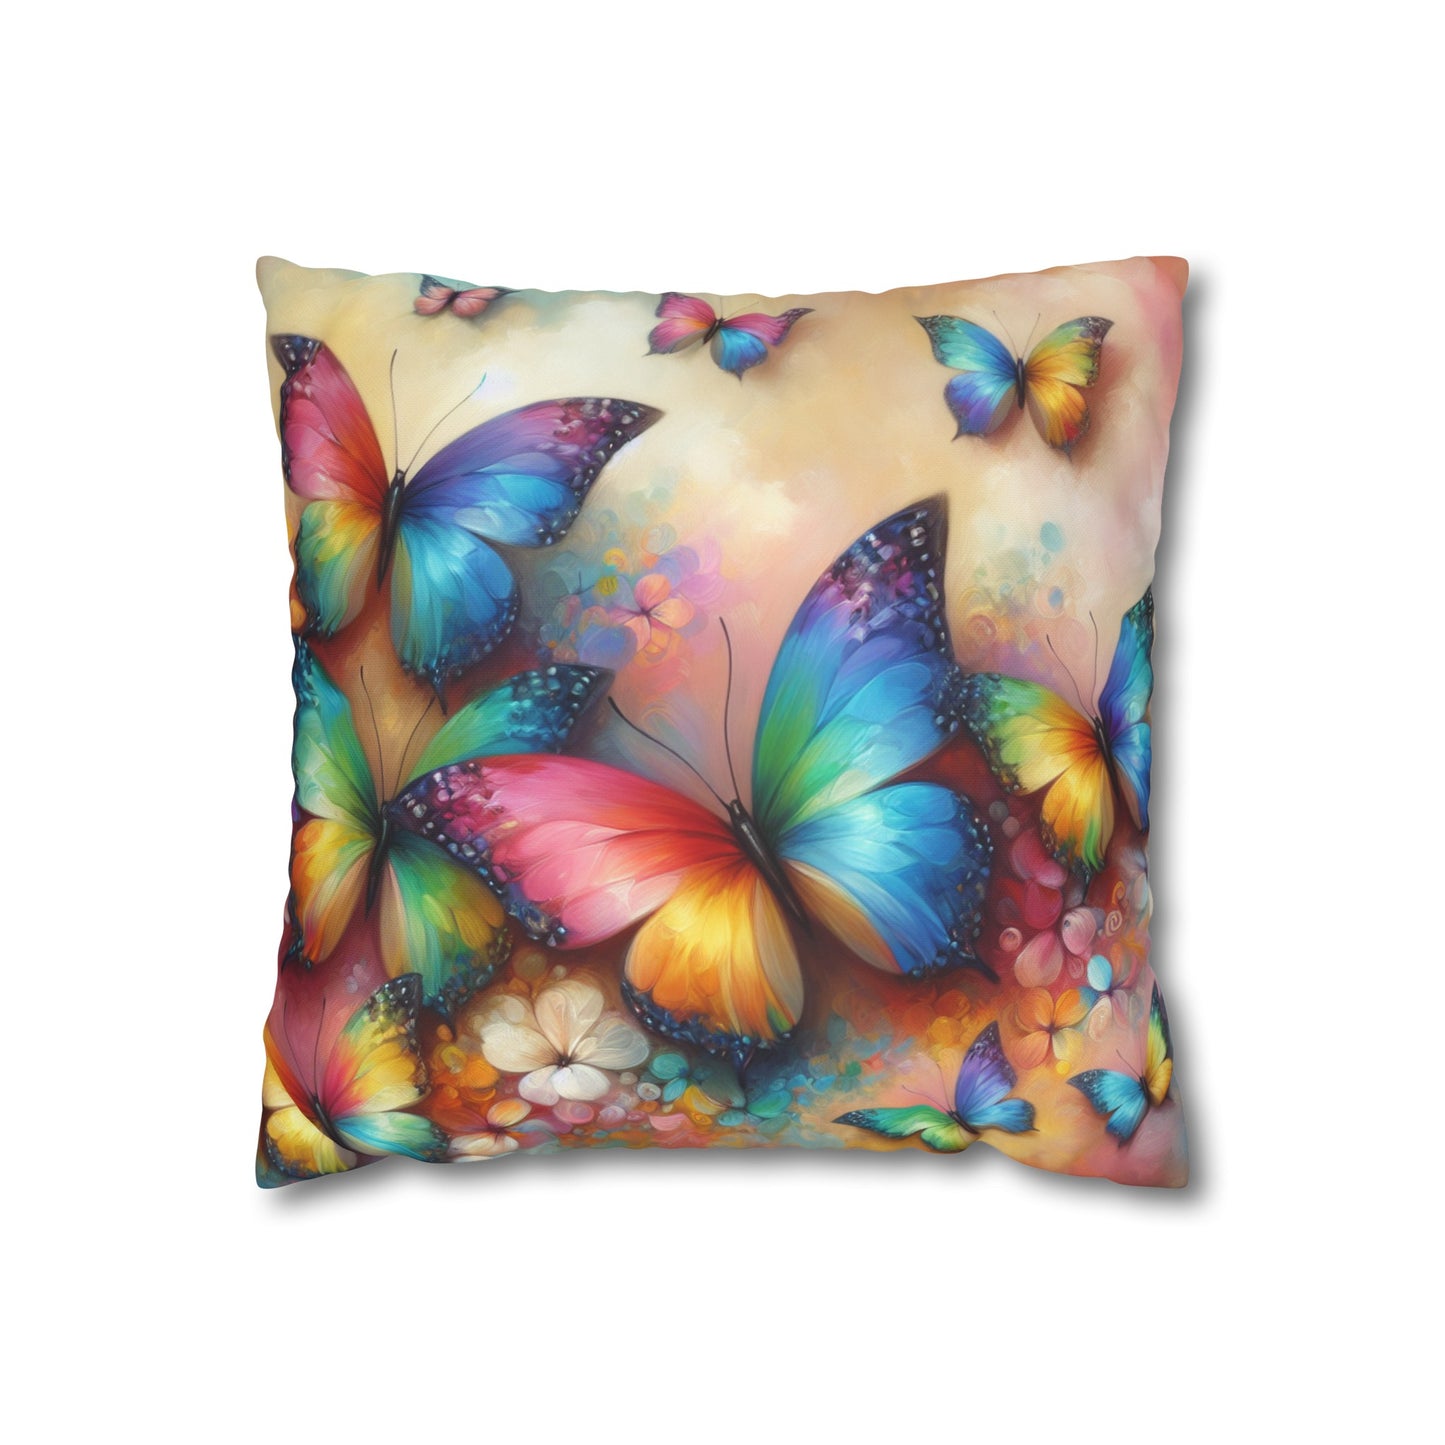 Art Deco Rainbow Butterfly Cushion Cover